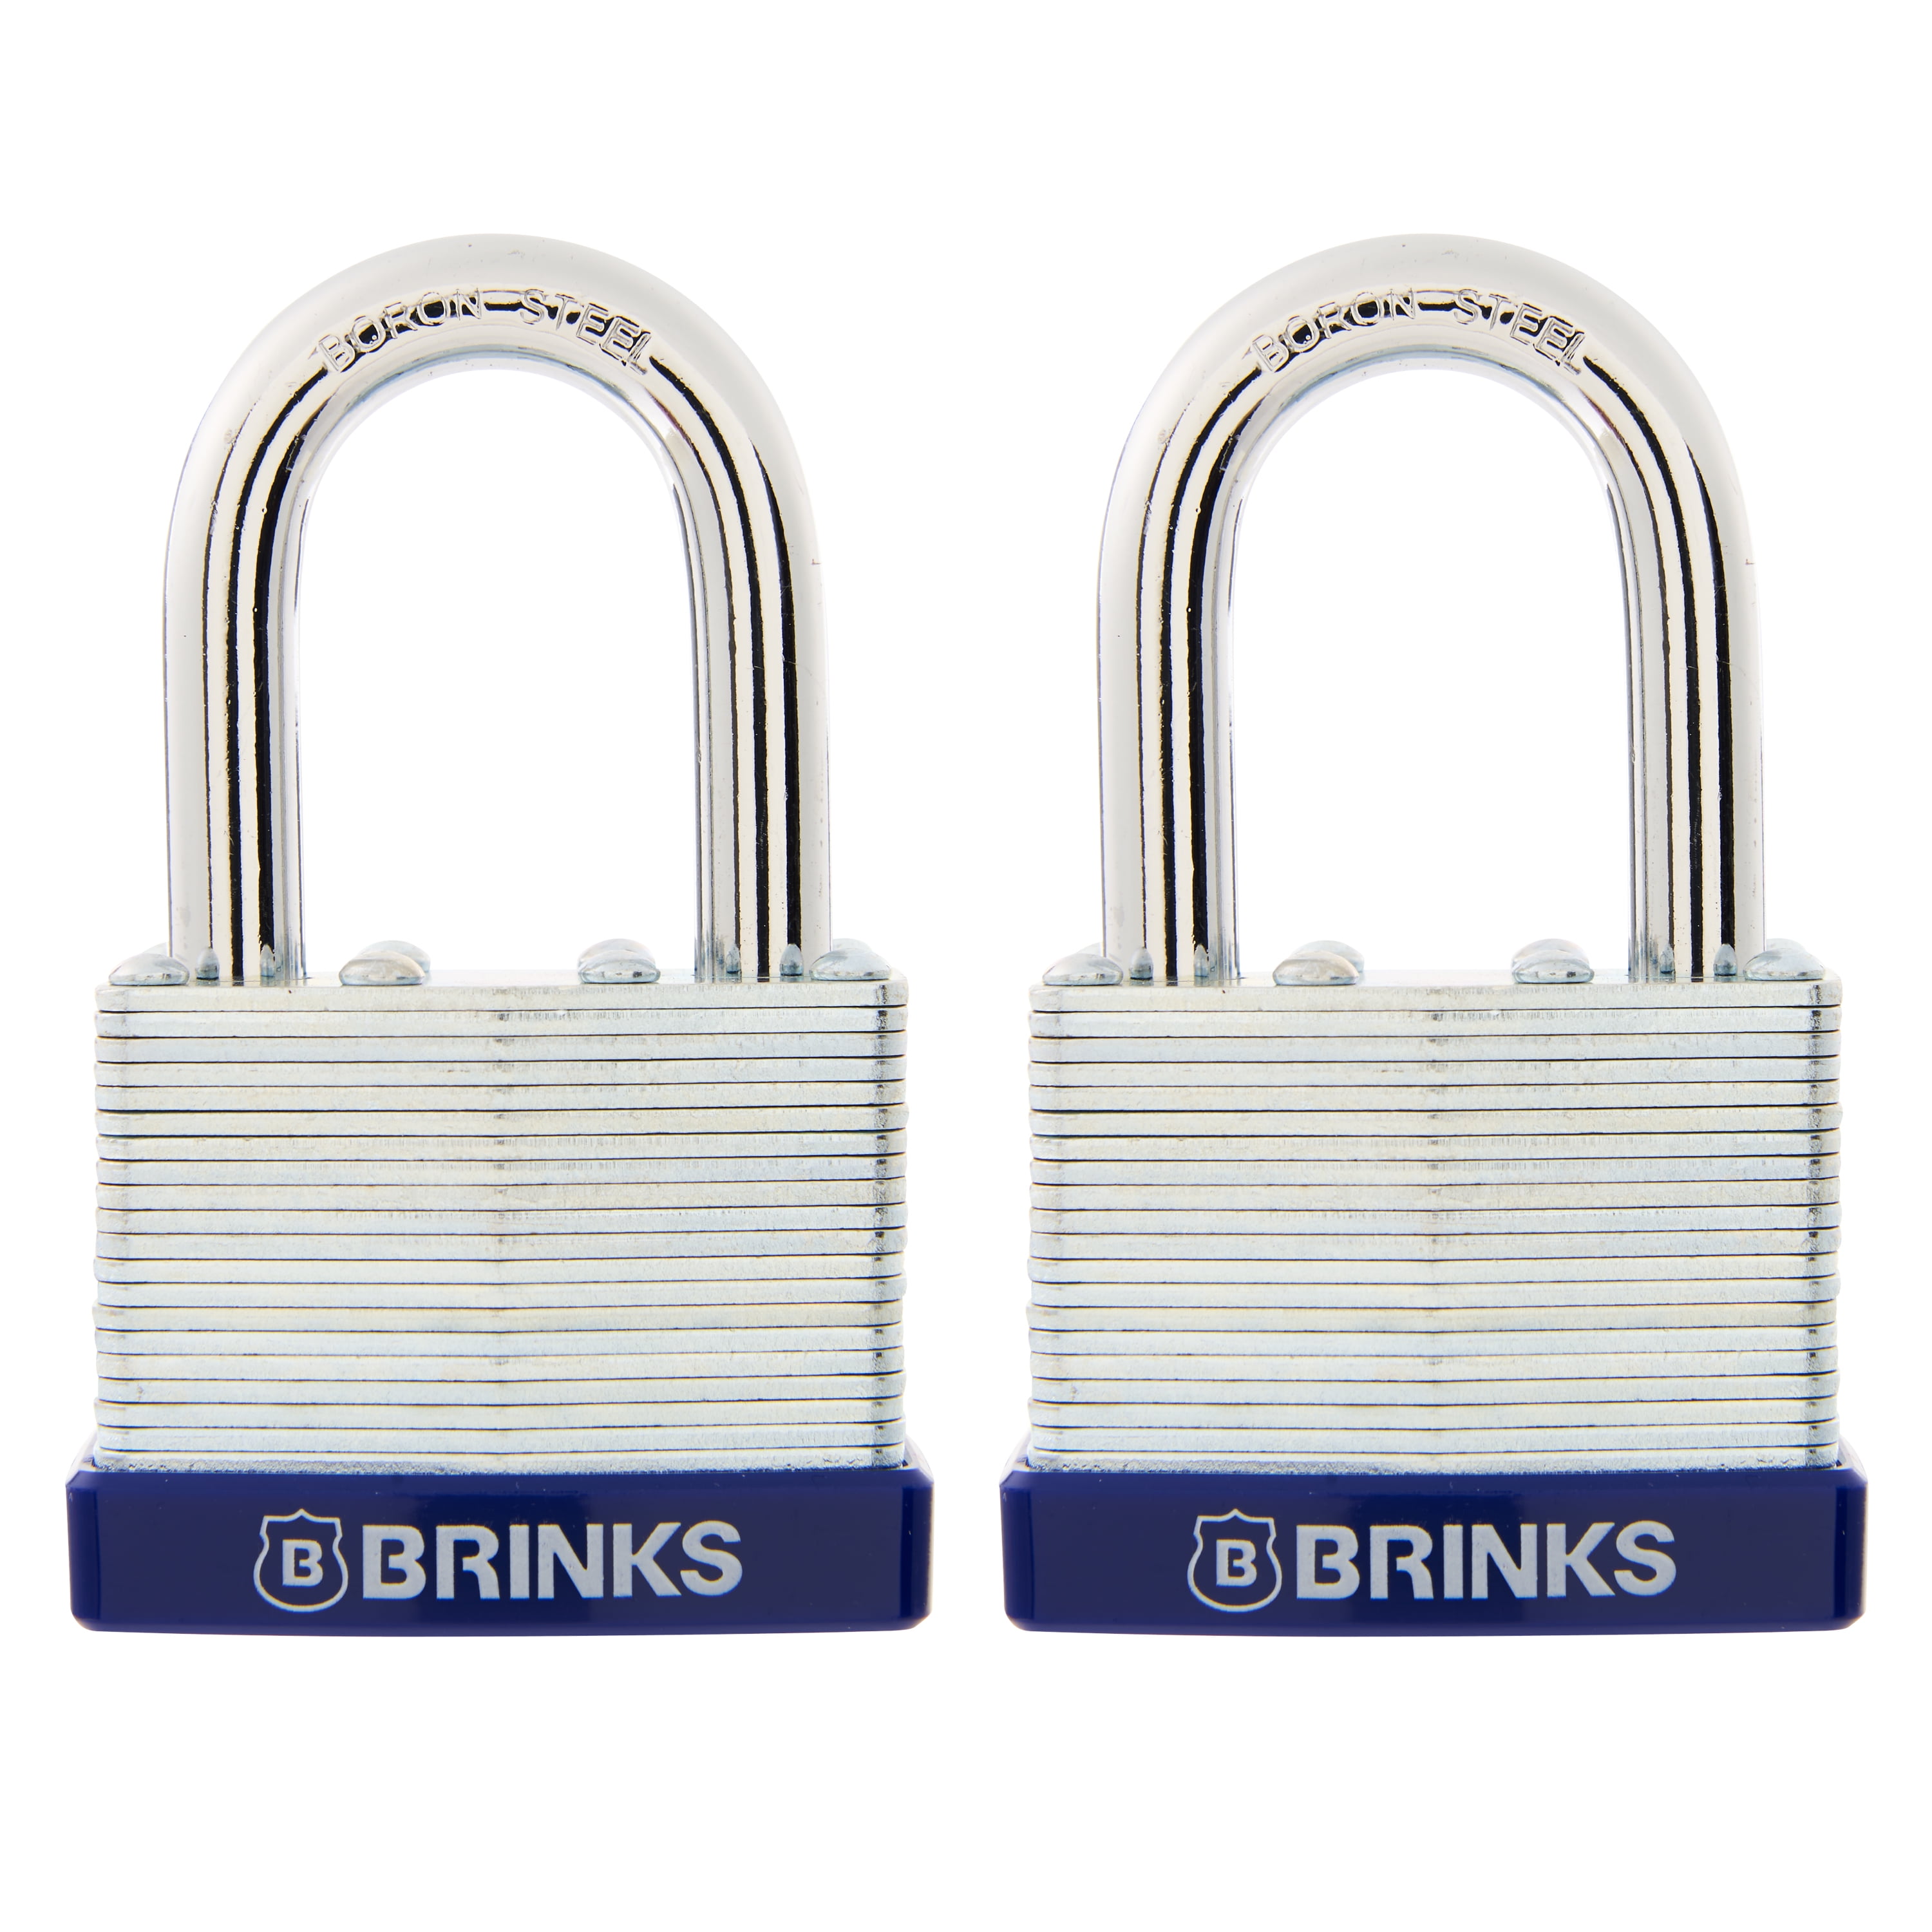 Keyed Alike 50 Mm Padlocks 2 Locks 4 Keys All The Same Laminated Steel for sale online 